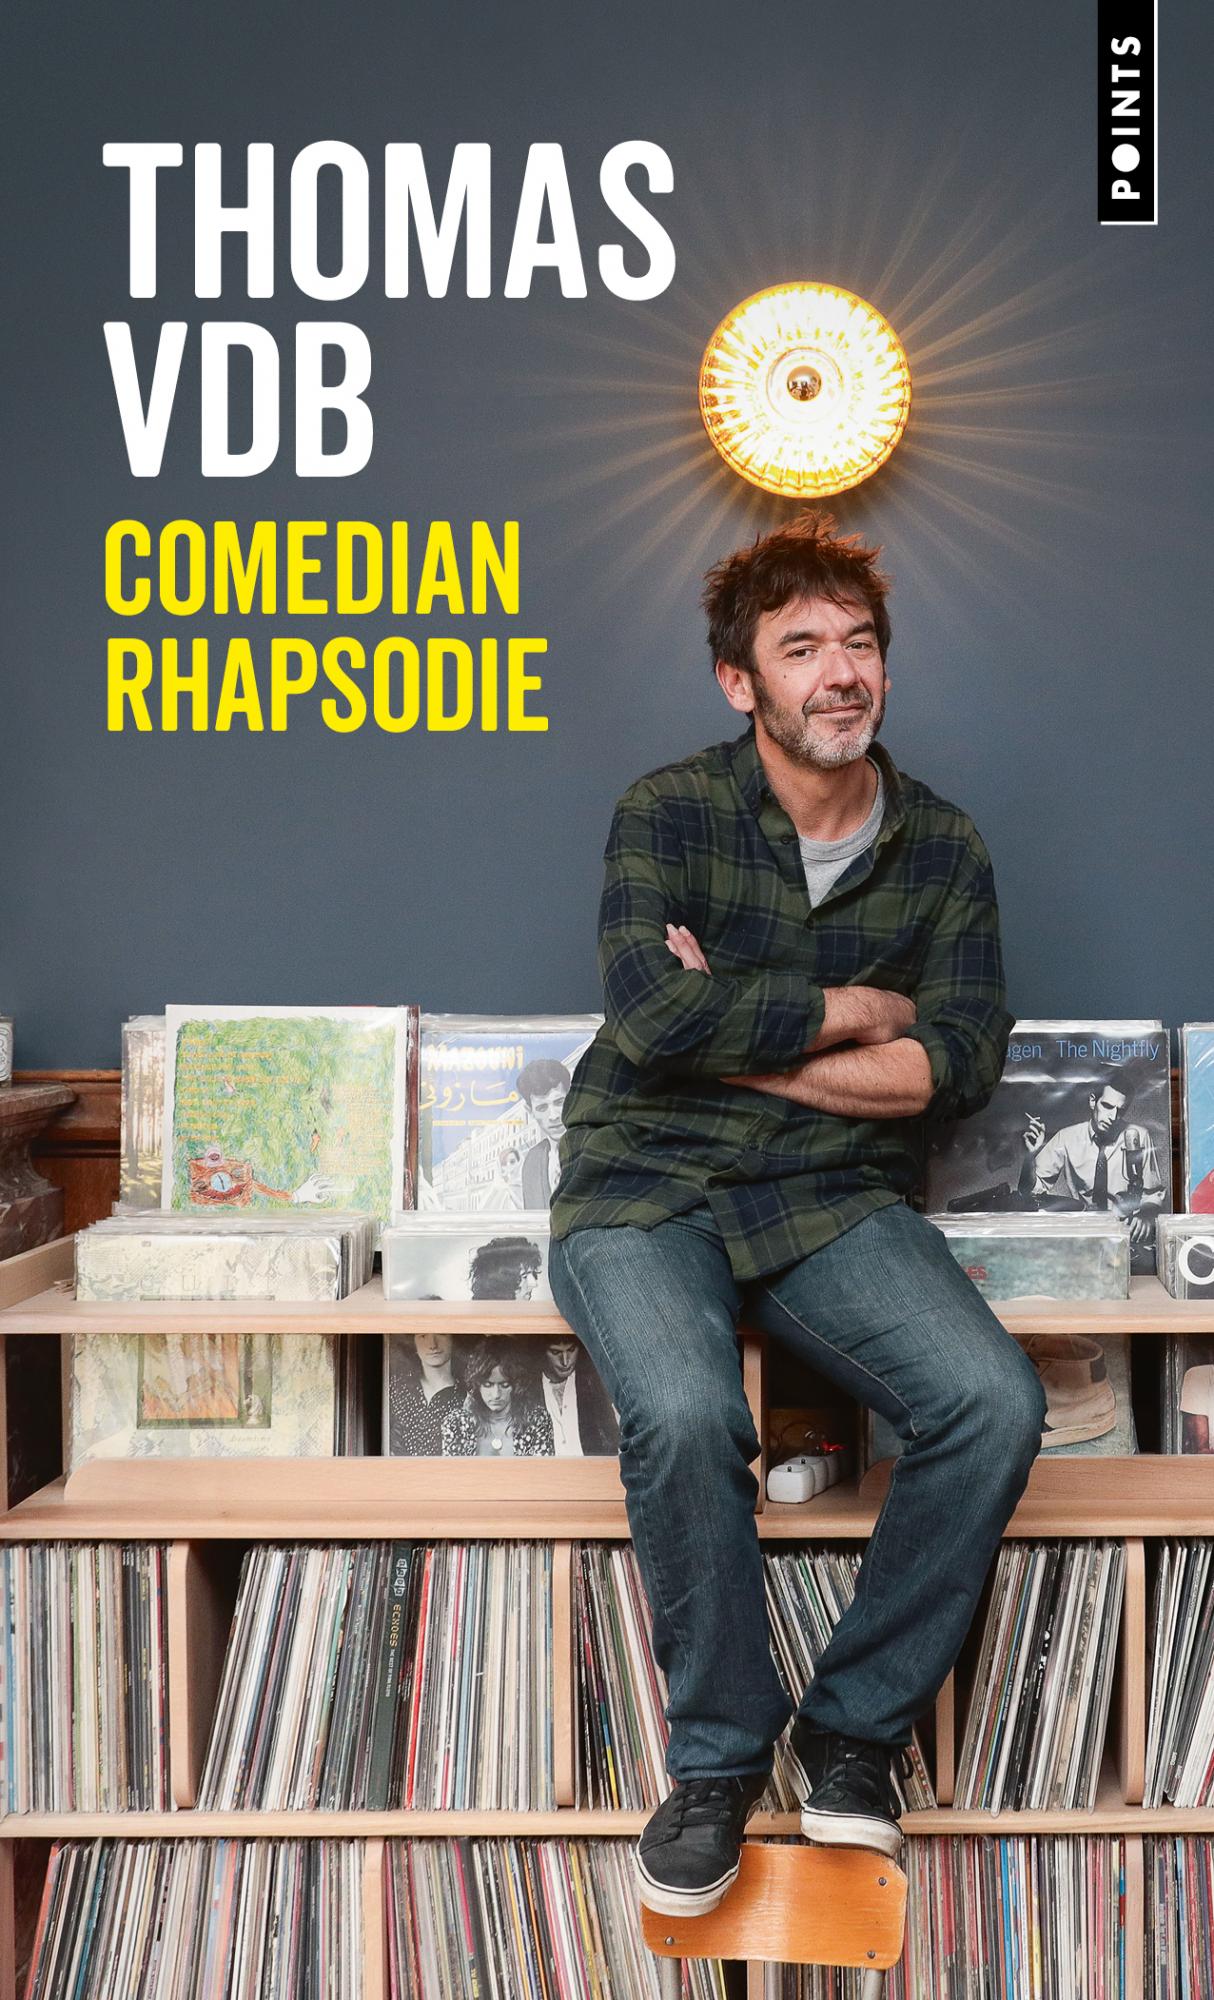 Comedian Rhapsodie - Thomas VDB